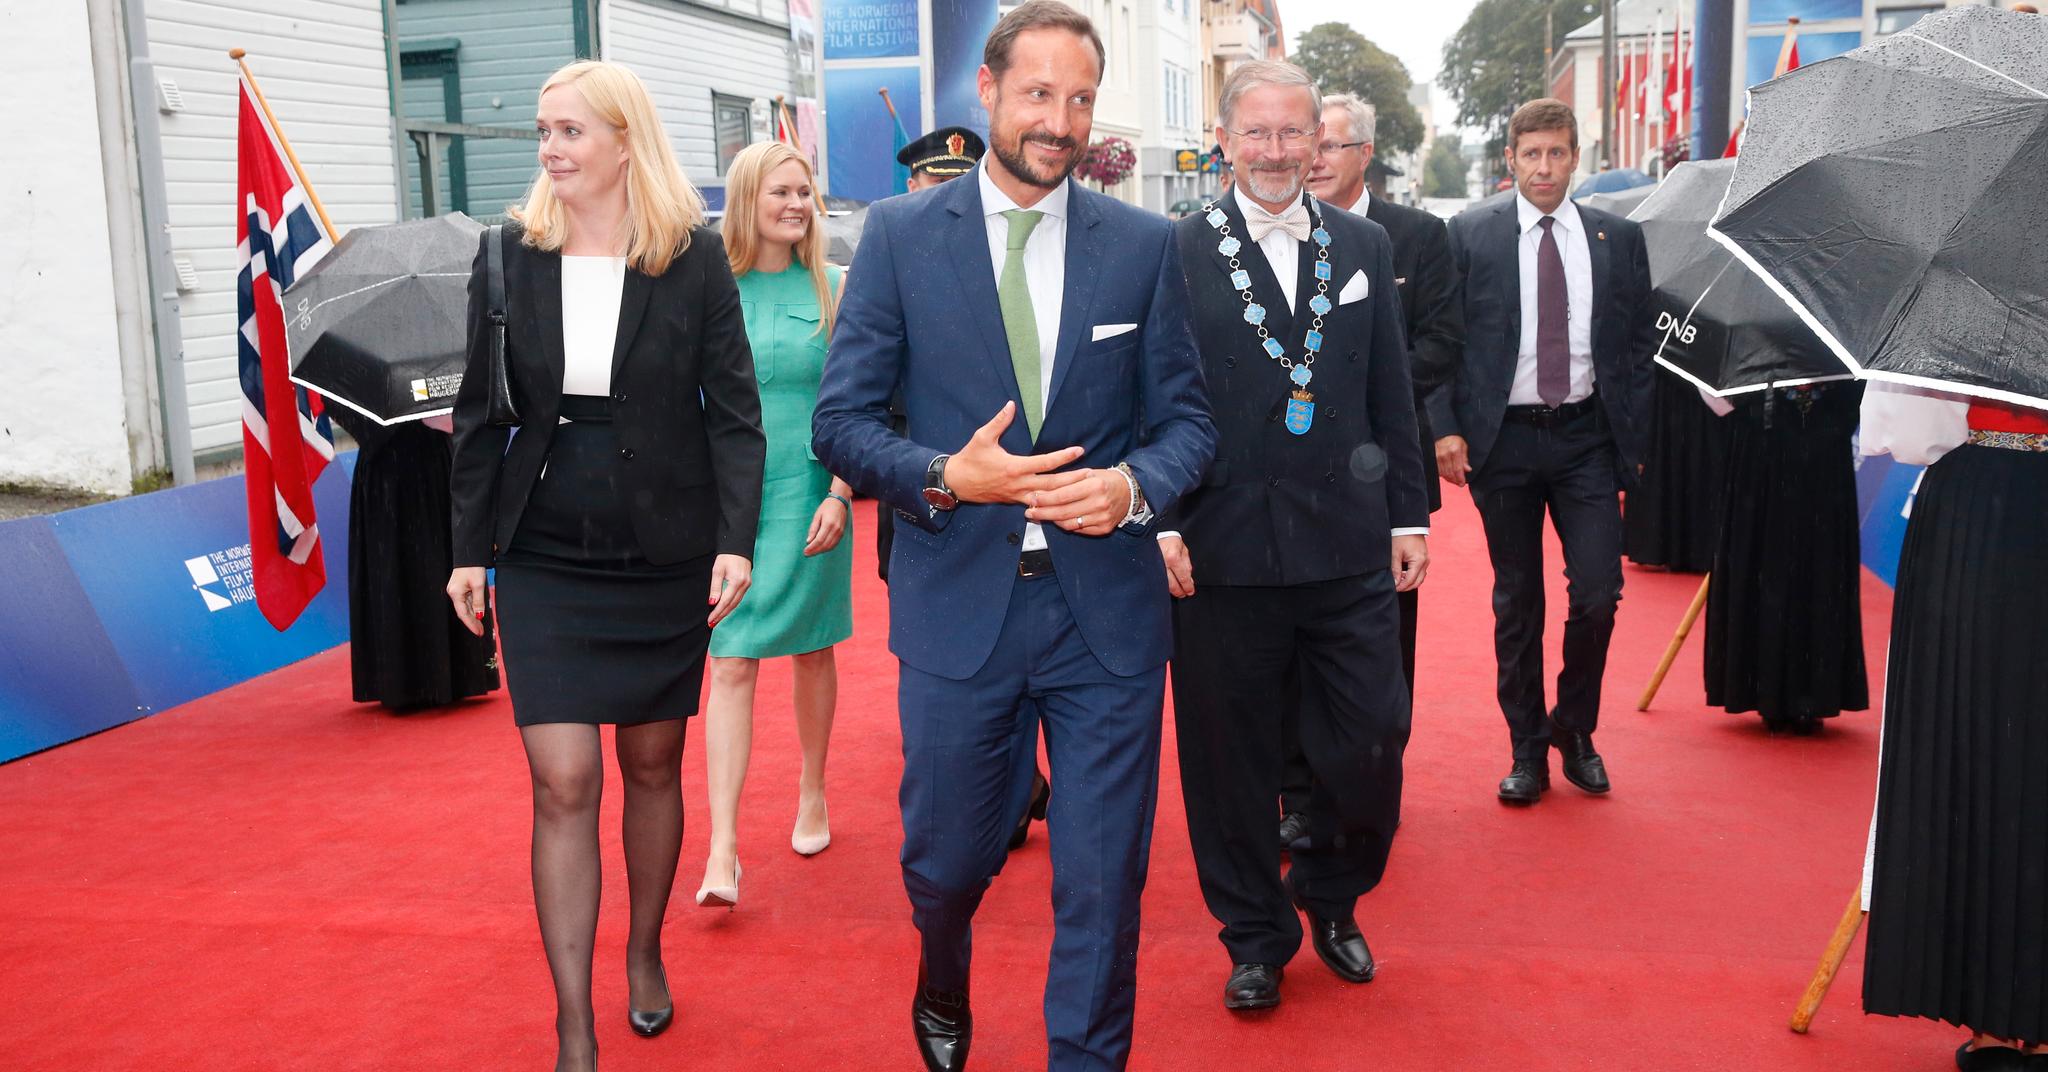 De norske filmfestivalene er svært bekymret for at statsstøtten de får kan bli kuttet ytterligere. Her kronprins Haakon under åpningen av filmfestivalen i Haugesund i august 2015, flankert av festivaldirektør Tonje Hardersen (til venstre) og daværende ordfører i Haugesund, Petter Steen jr. (til høyre).